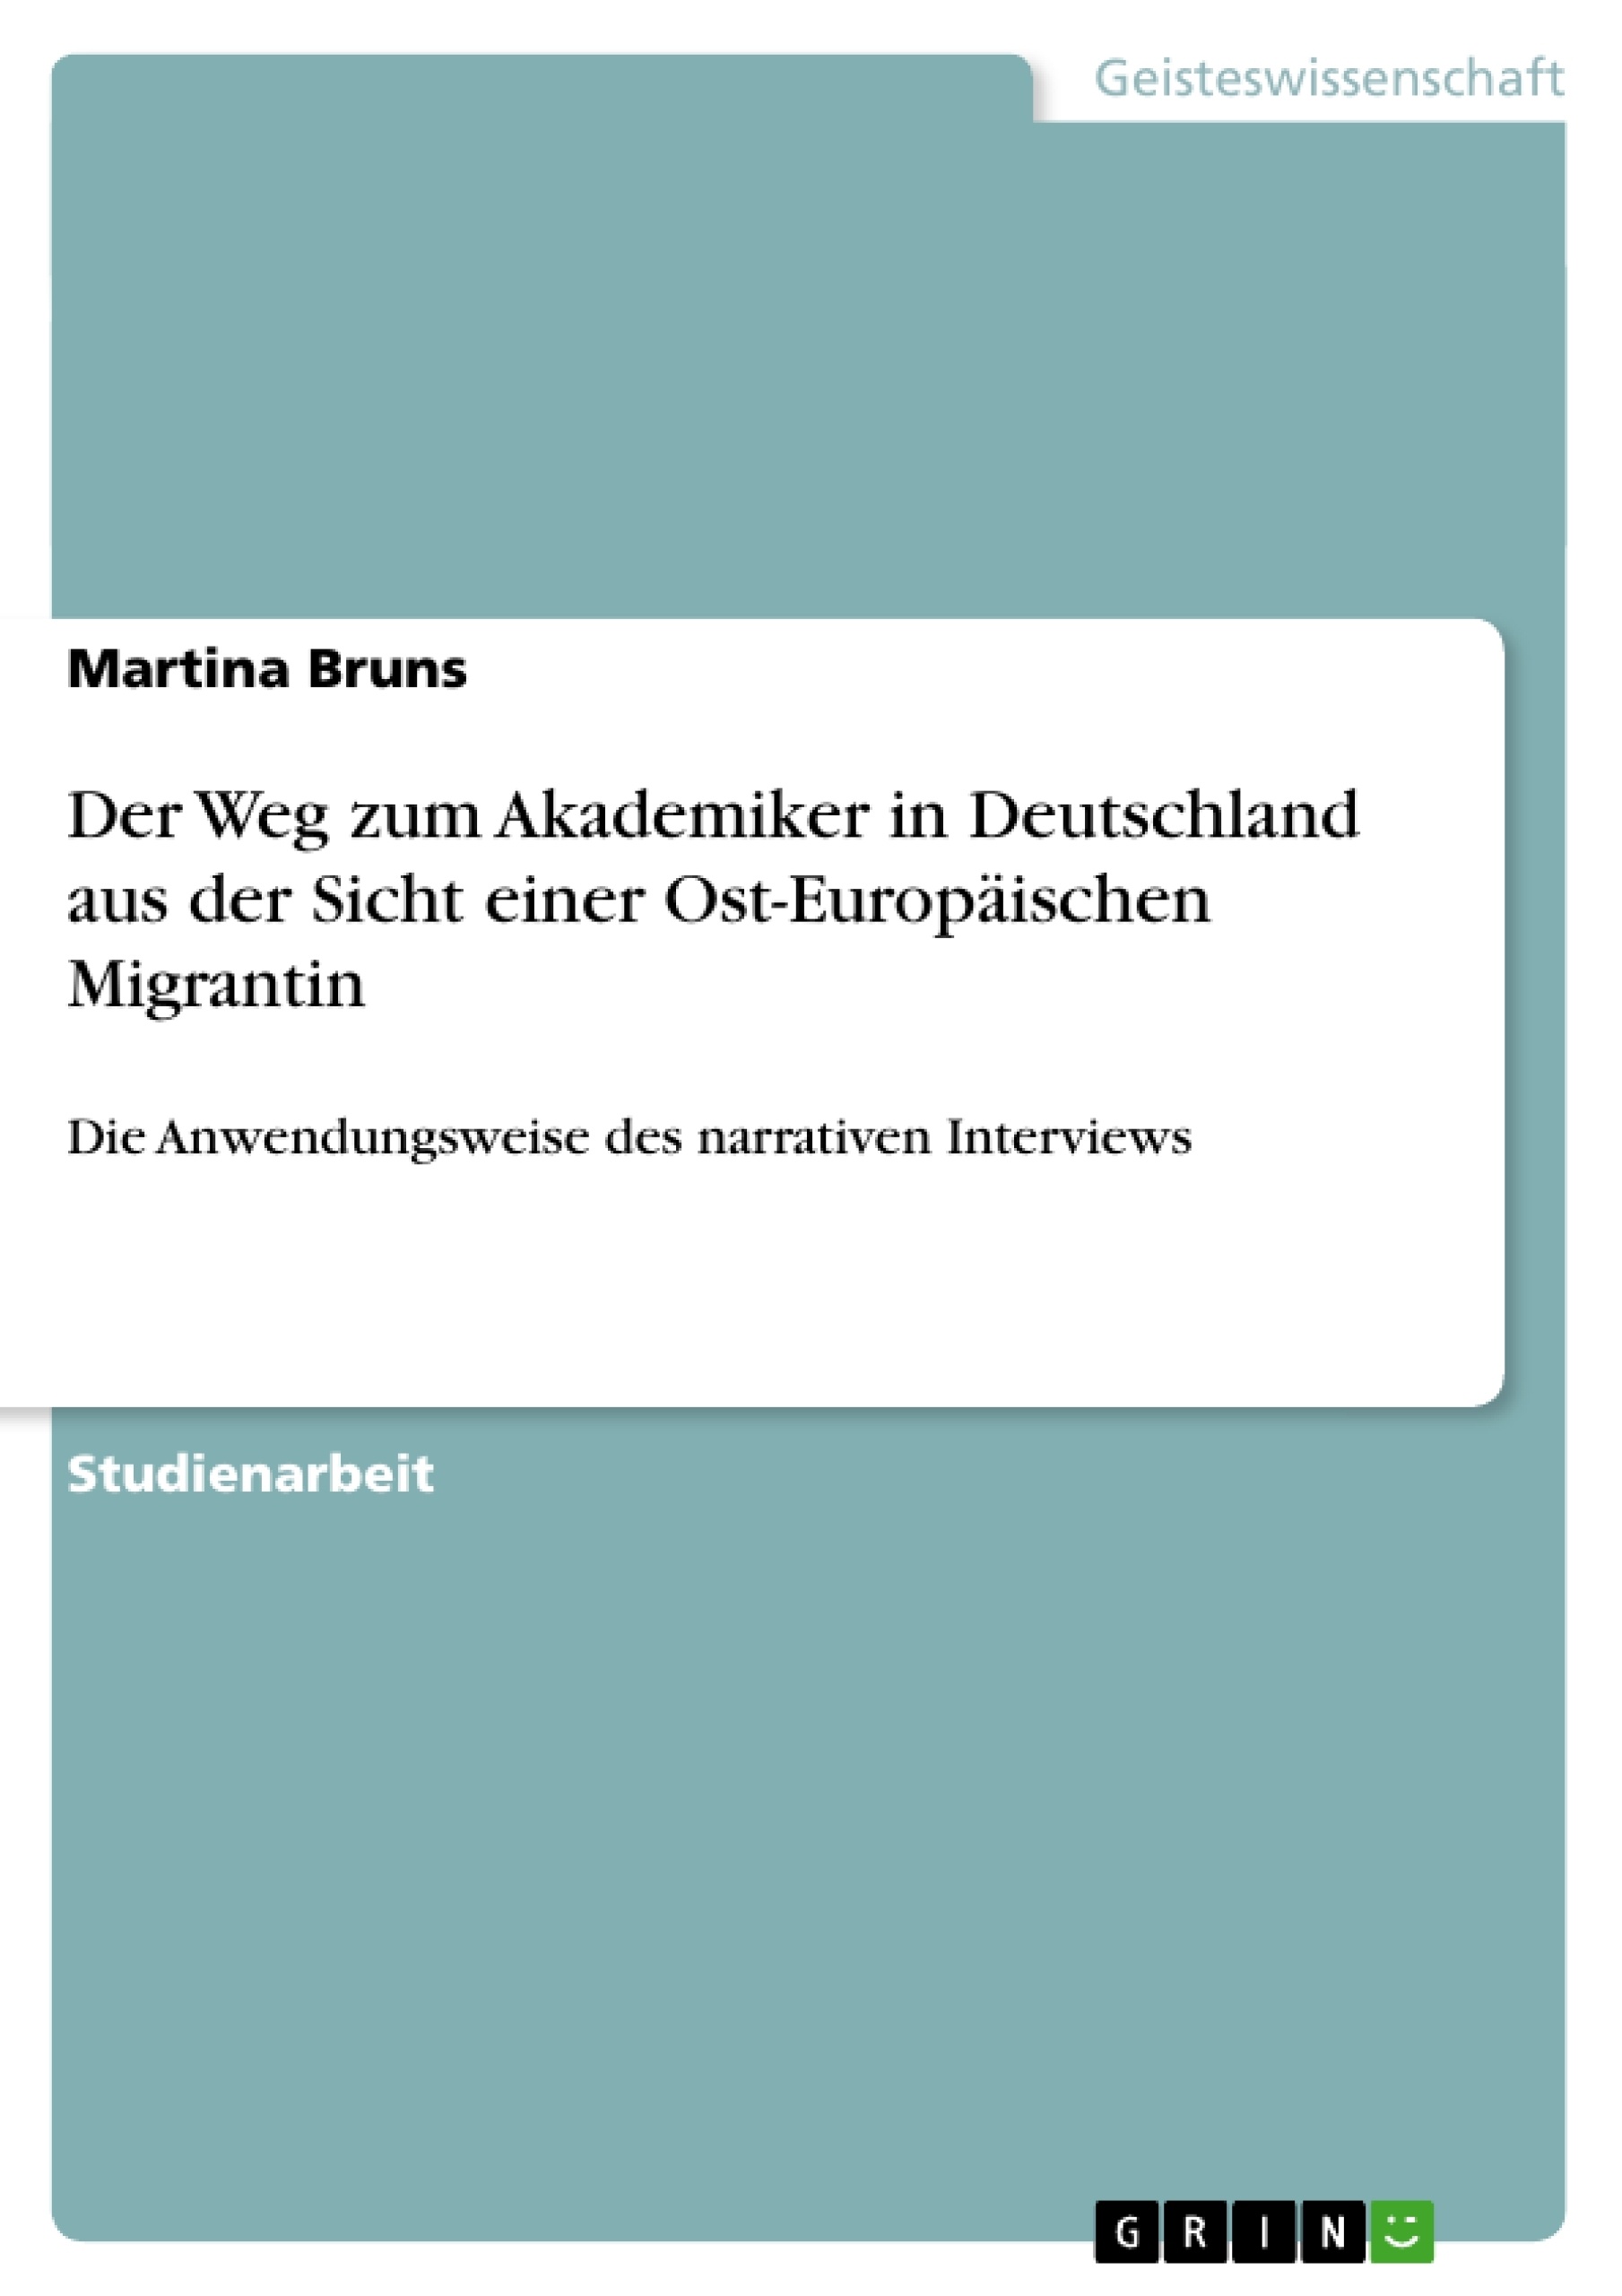 Titre: Der Weg zum Akademiker in Deutschland aus der Sicht einer Ost-Europäischen Migrantin